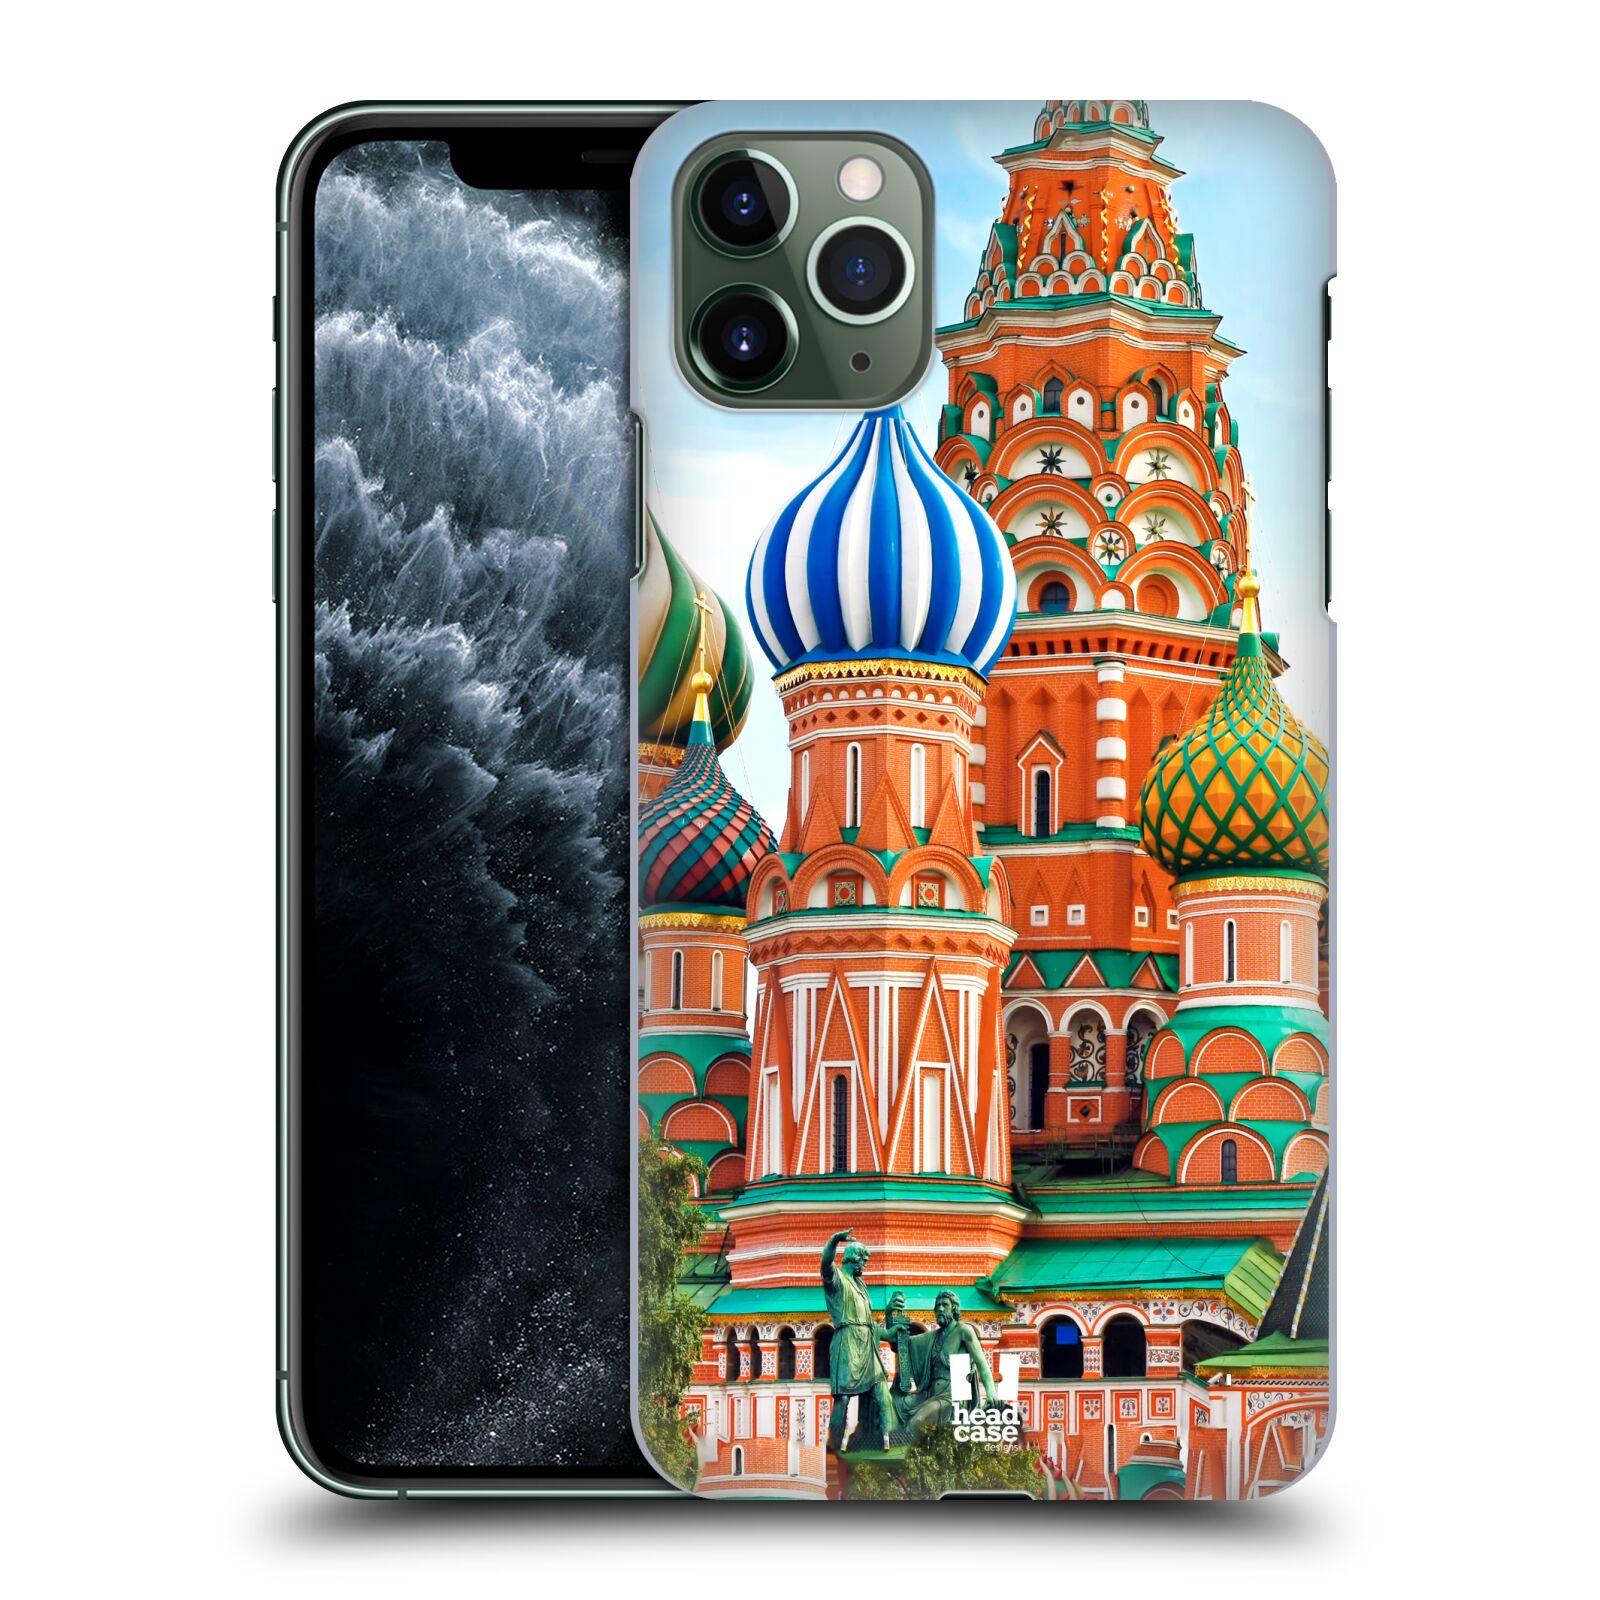 Pouzdro na mobil Apple Iphone 11 PRO MAX - HEAD CASE - vzor Města foto náměstí RUSKO,MOSKVA, RUDÉ NÁMĚSTÍ